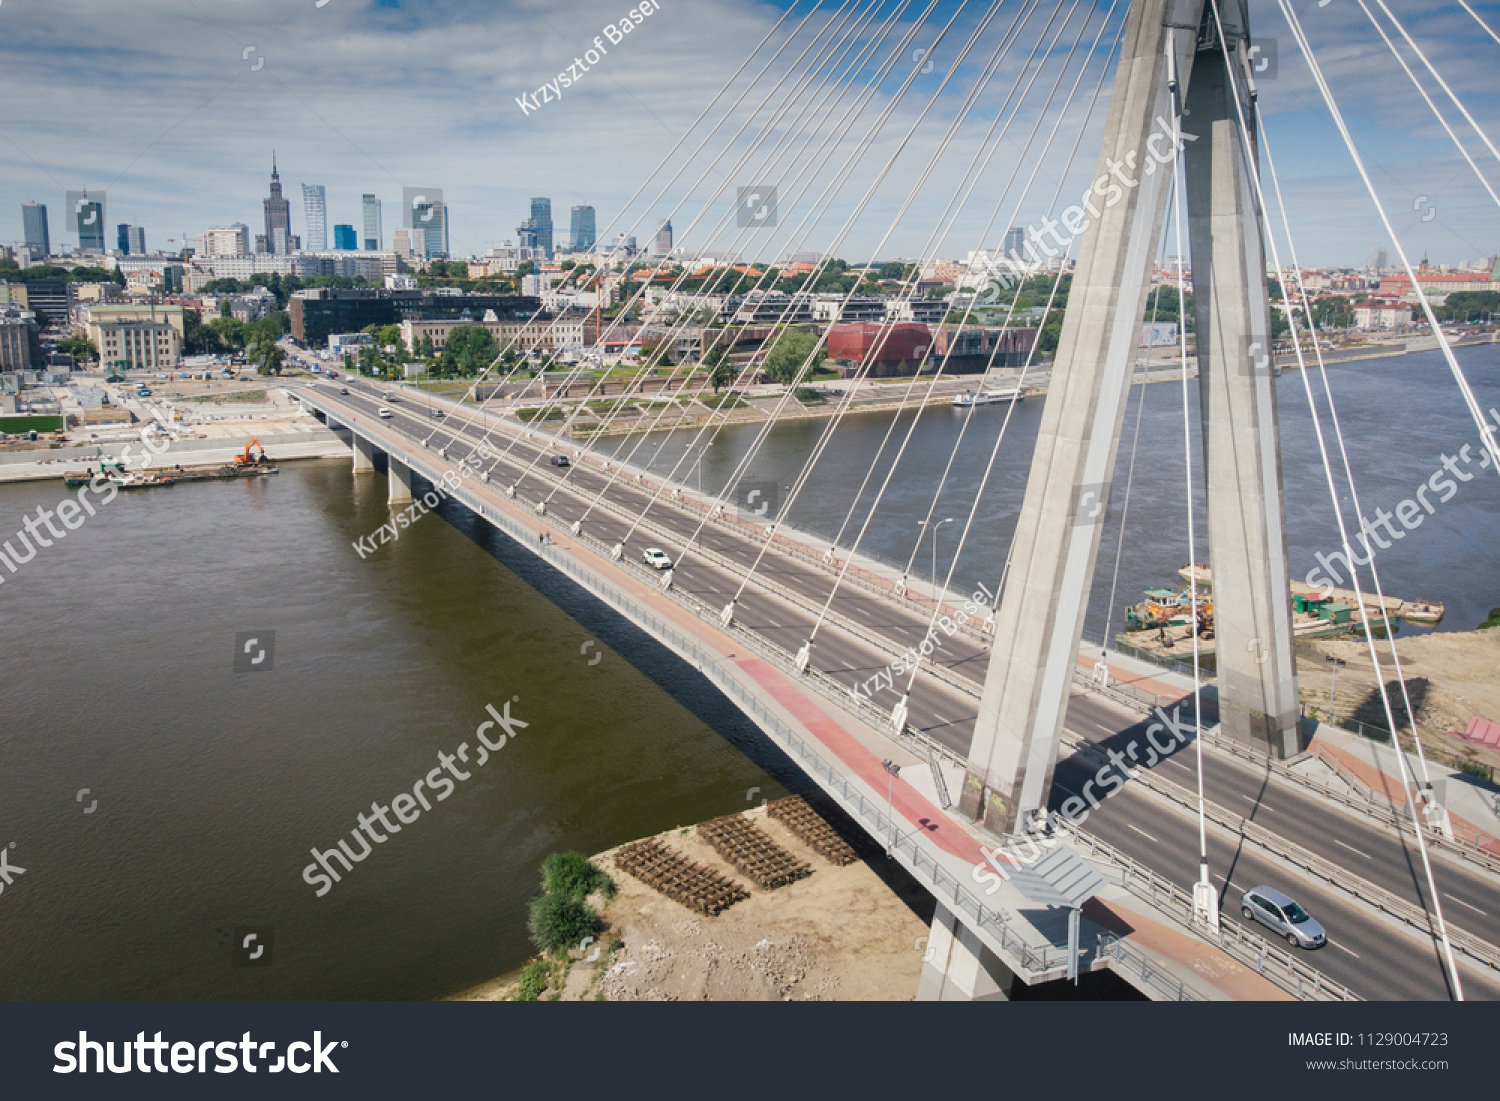 Panorama of Warszawa, view of the Vistula River, Poland #1129004723